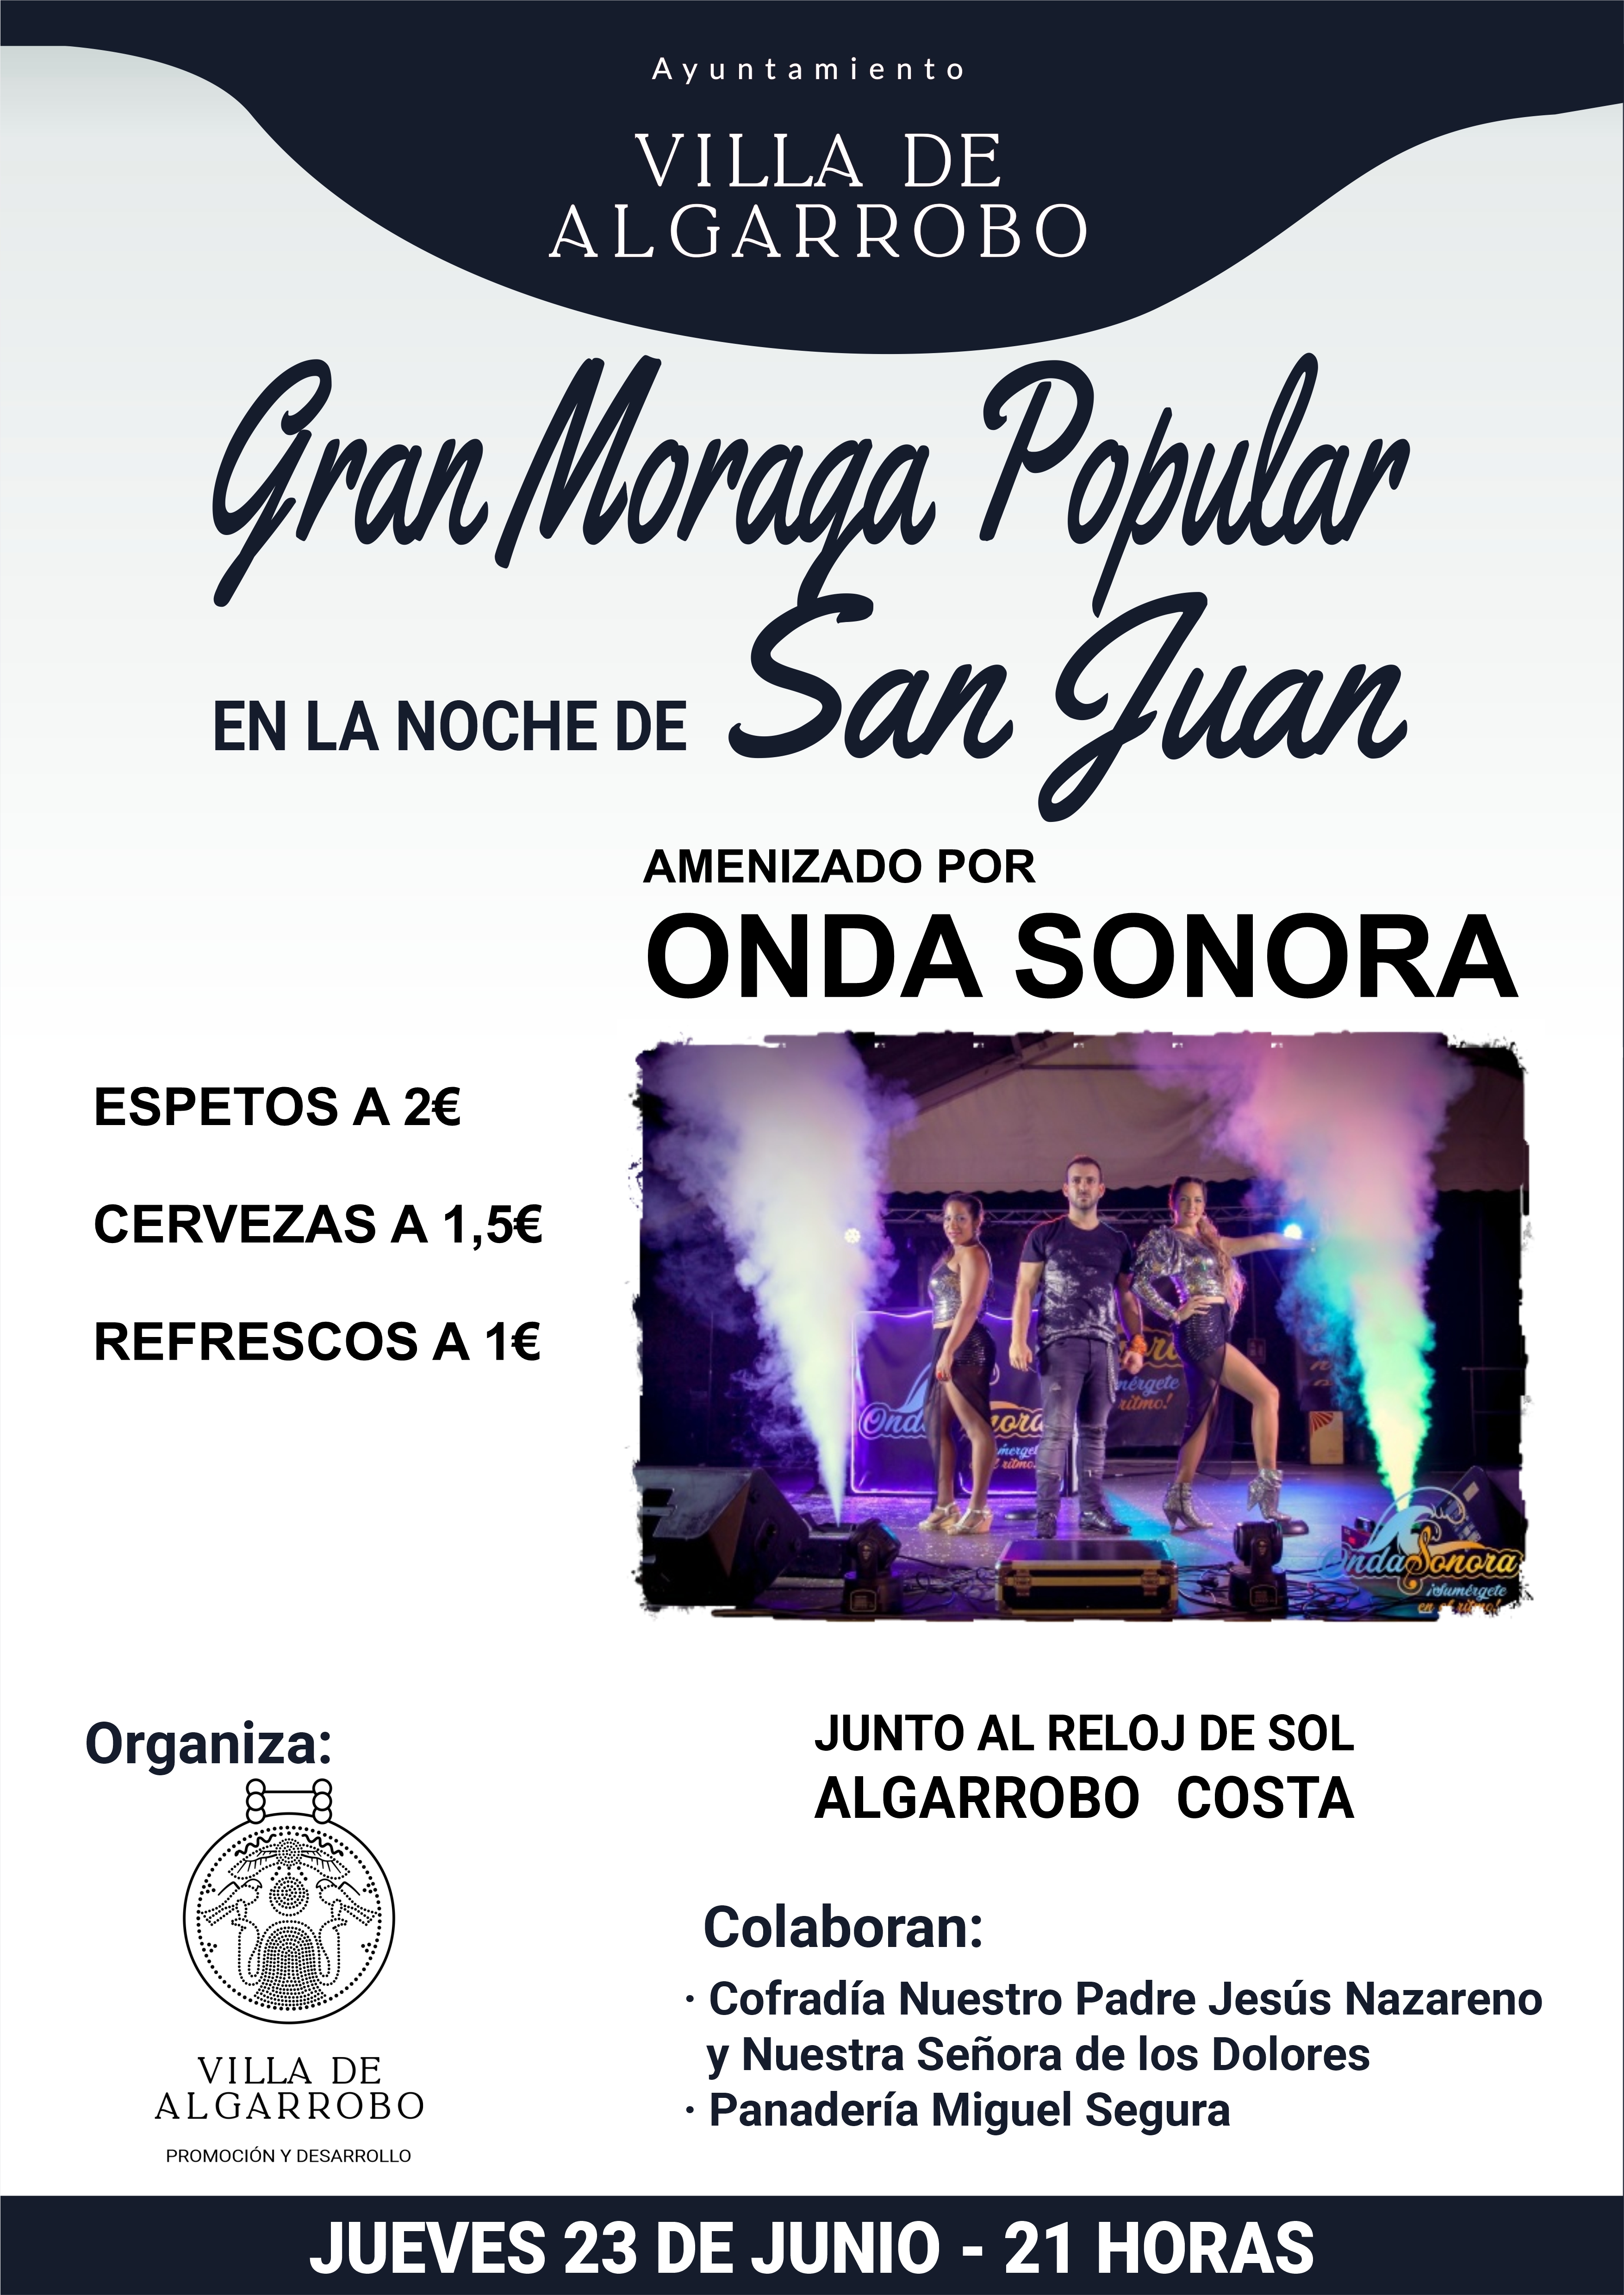 Gran Moraga Popular en la noche de San Juan